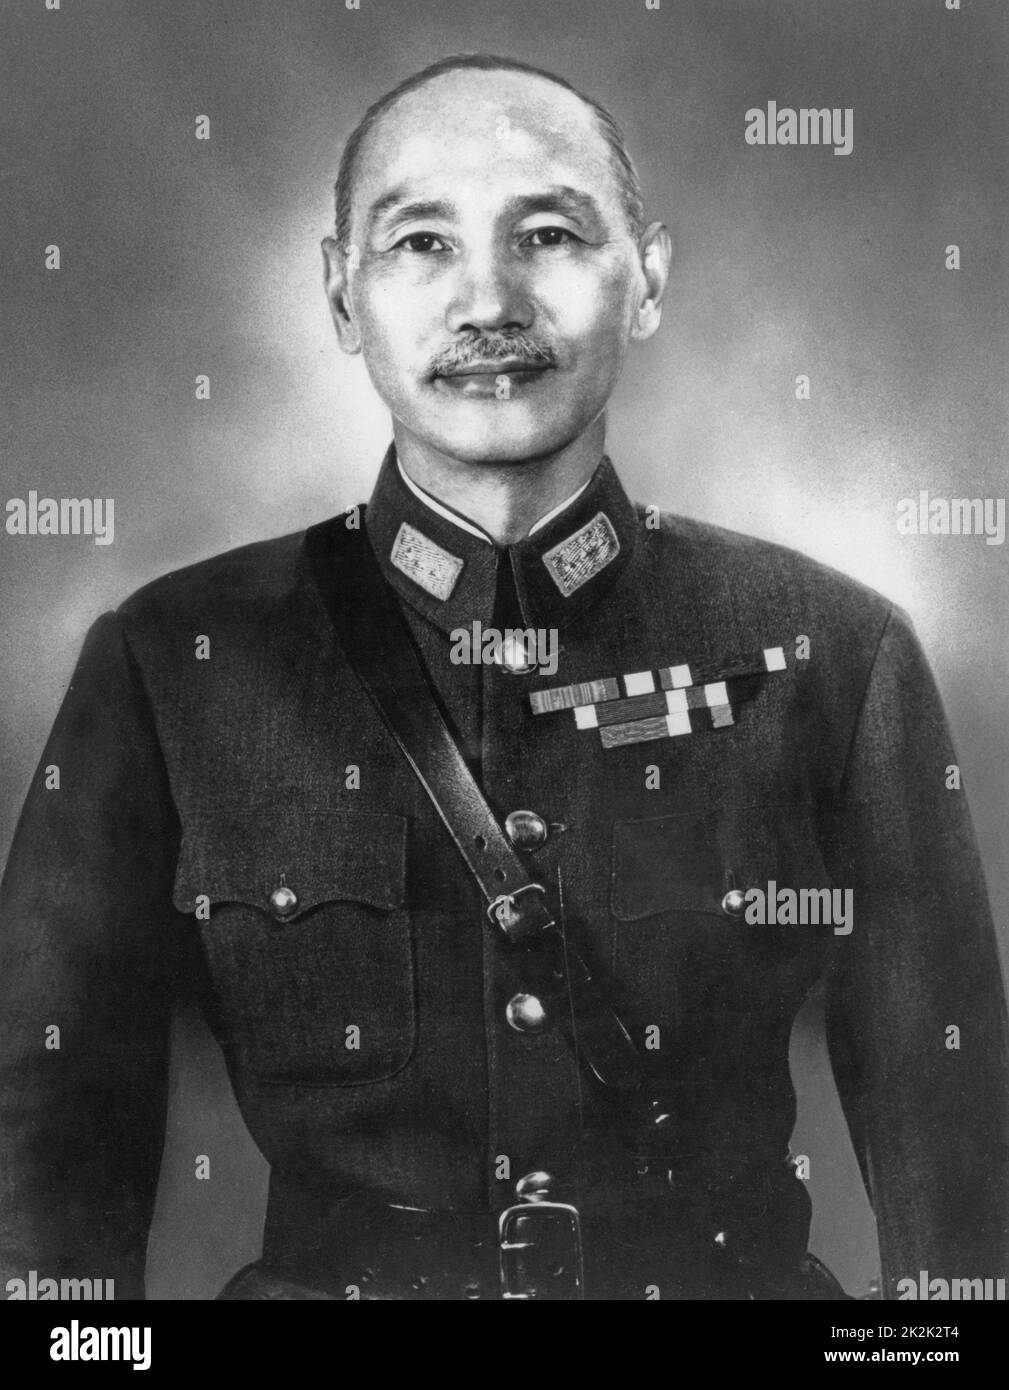 Offizielles Porträt von Chiang Kai-shek, Vertreter des chinesischen Militärs und Staatsmannes der Kuomintang. 1945 Stockfoto